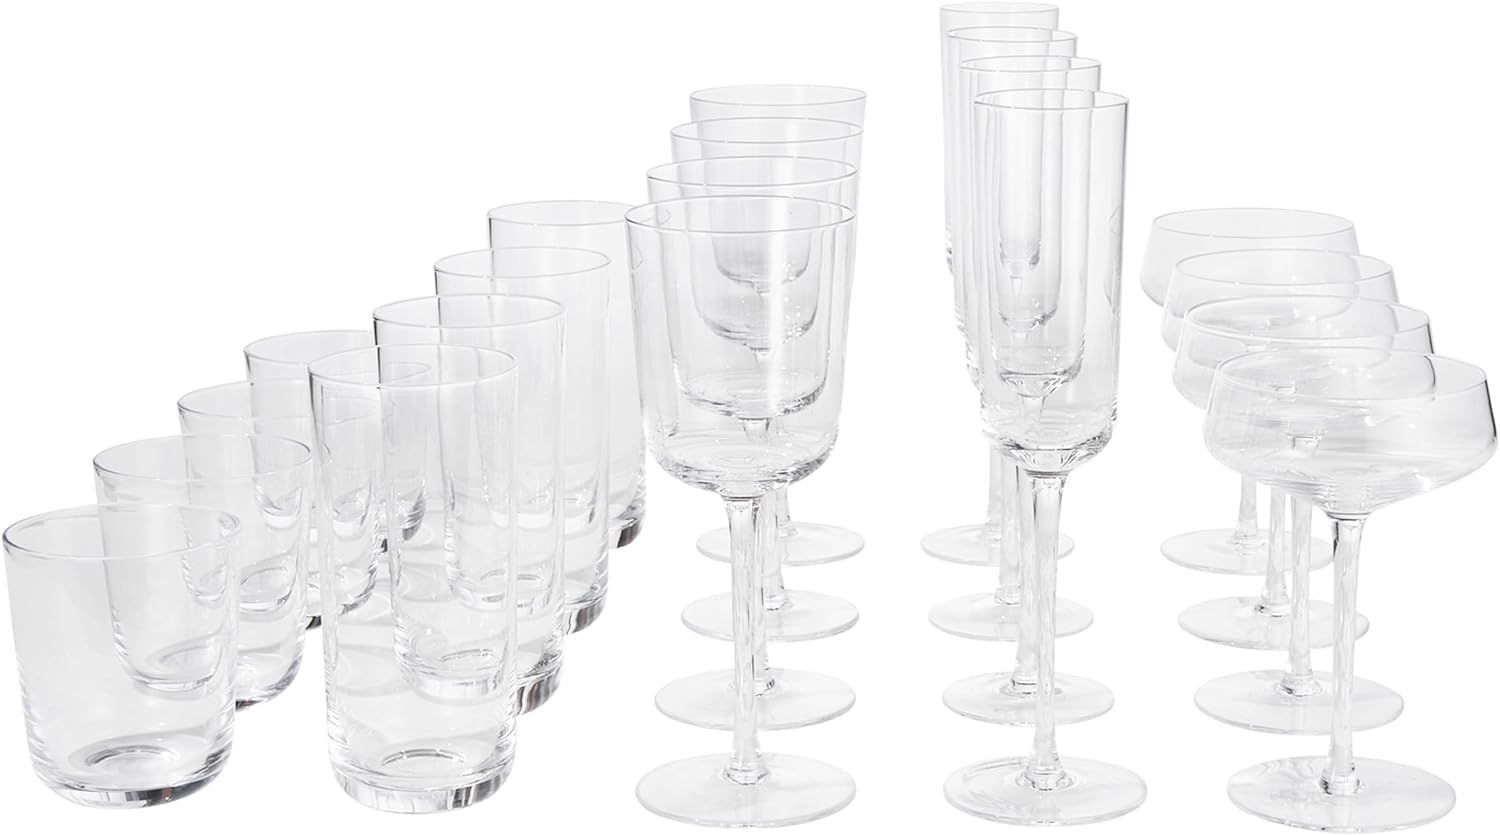 Leeway glassware set